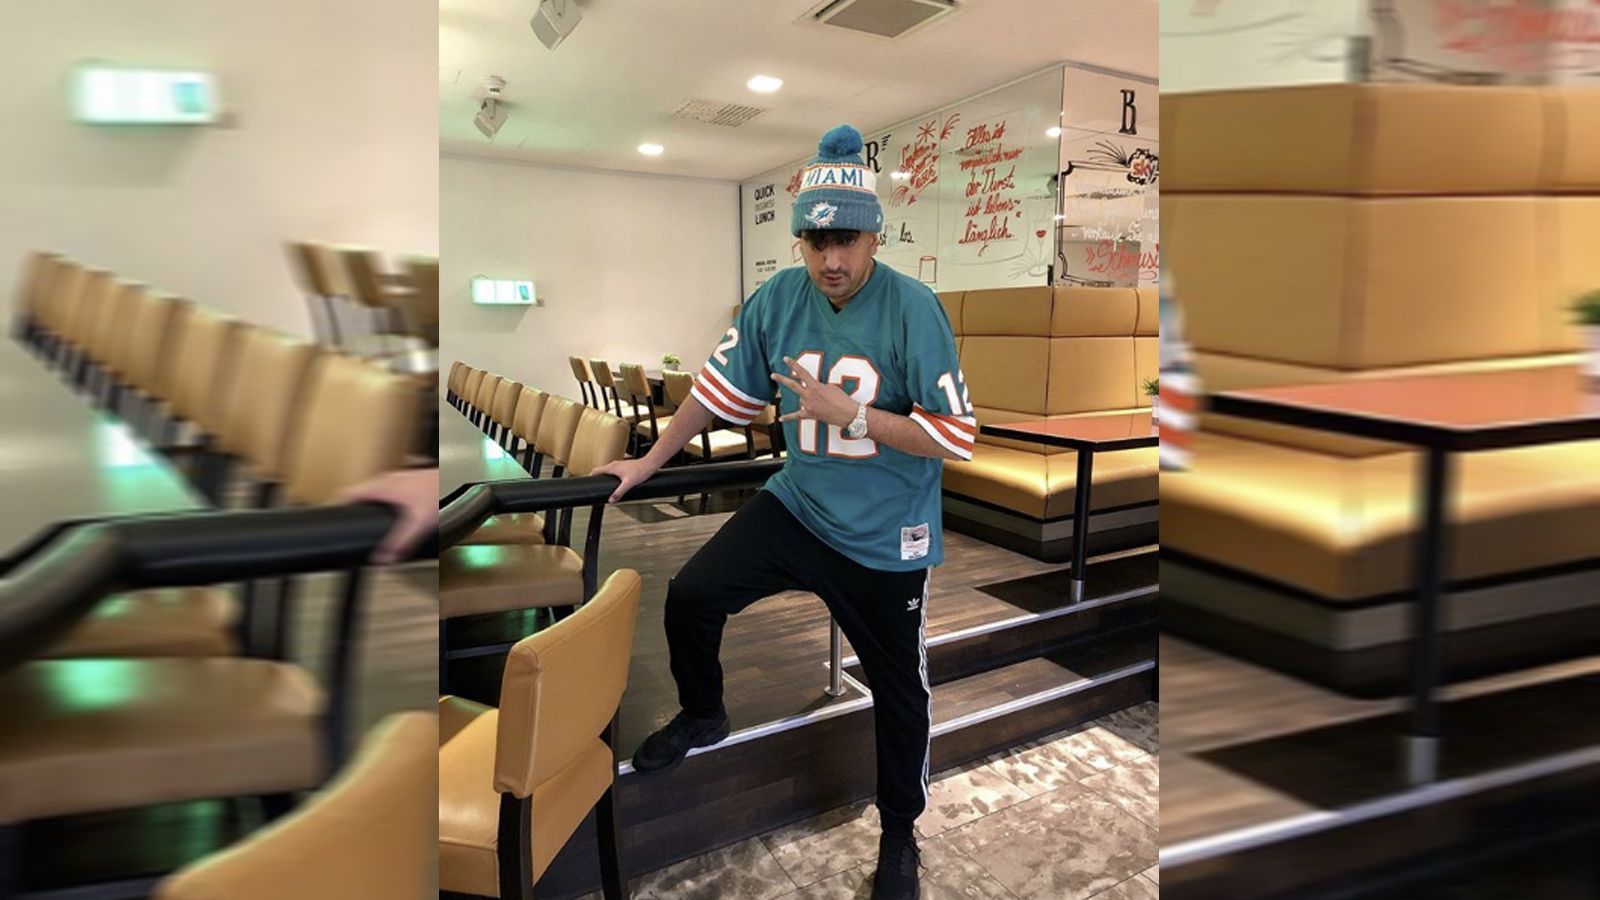 
                <strong>Haftbefehl (Miami Dolphins) </strong><br>
                Der deutsche Rapper Haftbefehl hat sich als NFL-Fan bekannt und postete ein Instagram-Bild mit Dolphins-Trikot und Dolphins-Mütze.
              